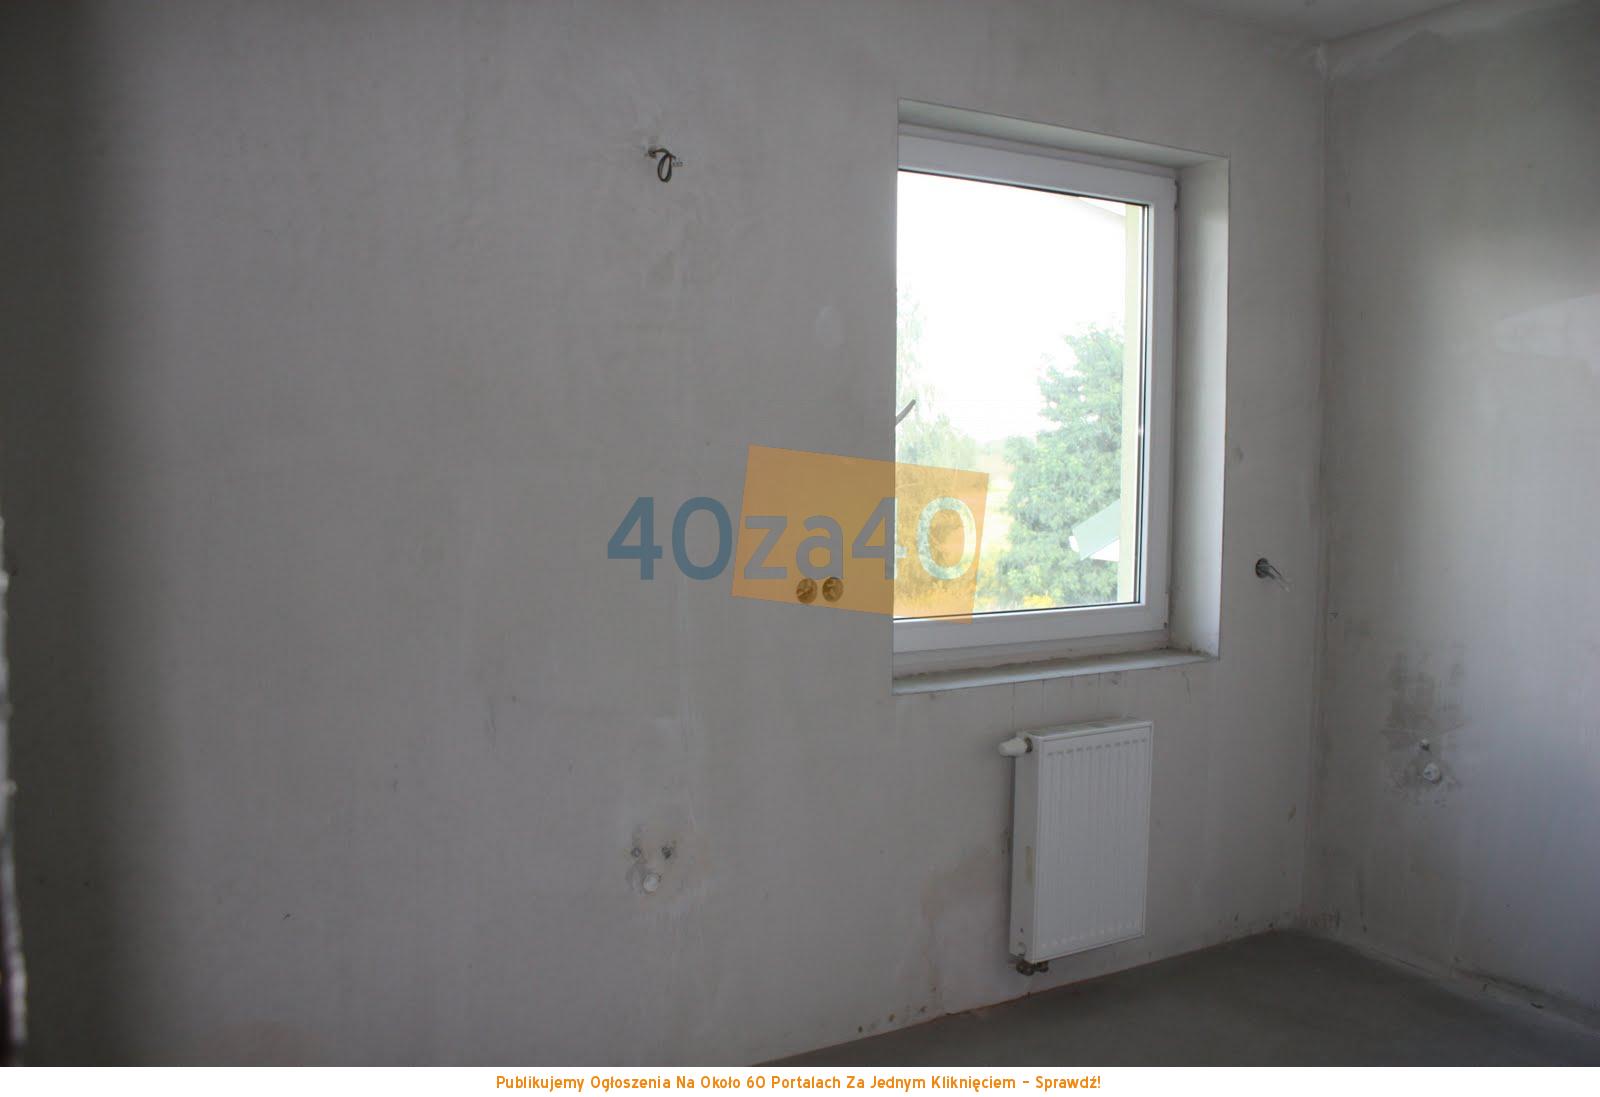 Dom na sprzedaż, powierzchnia: 134 m2, pokoje: 4, cena: 589 000,00 PLN, Józefosław, kontakt: 601625677